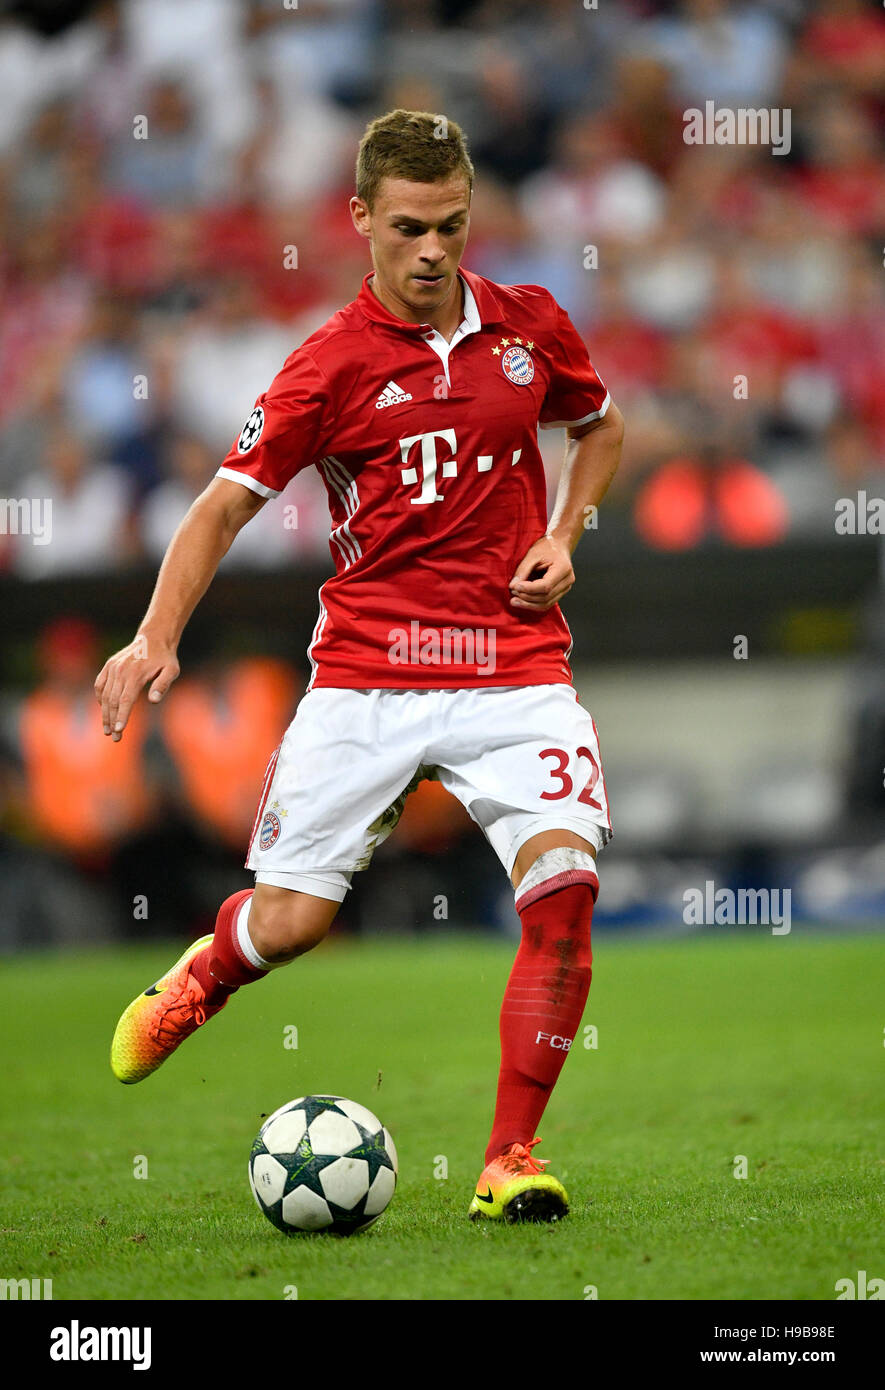 Joshua Kimmich jouant au football, soccer, Bayern Munich, l'Allianz Arena, Munich, Bavière, Allemagne Banque D'Images